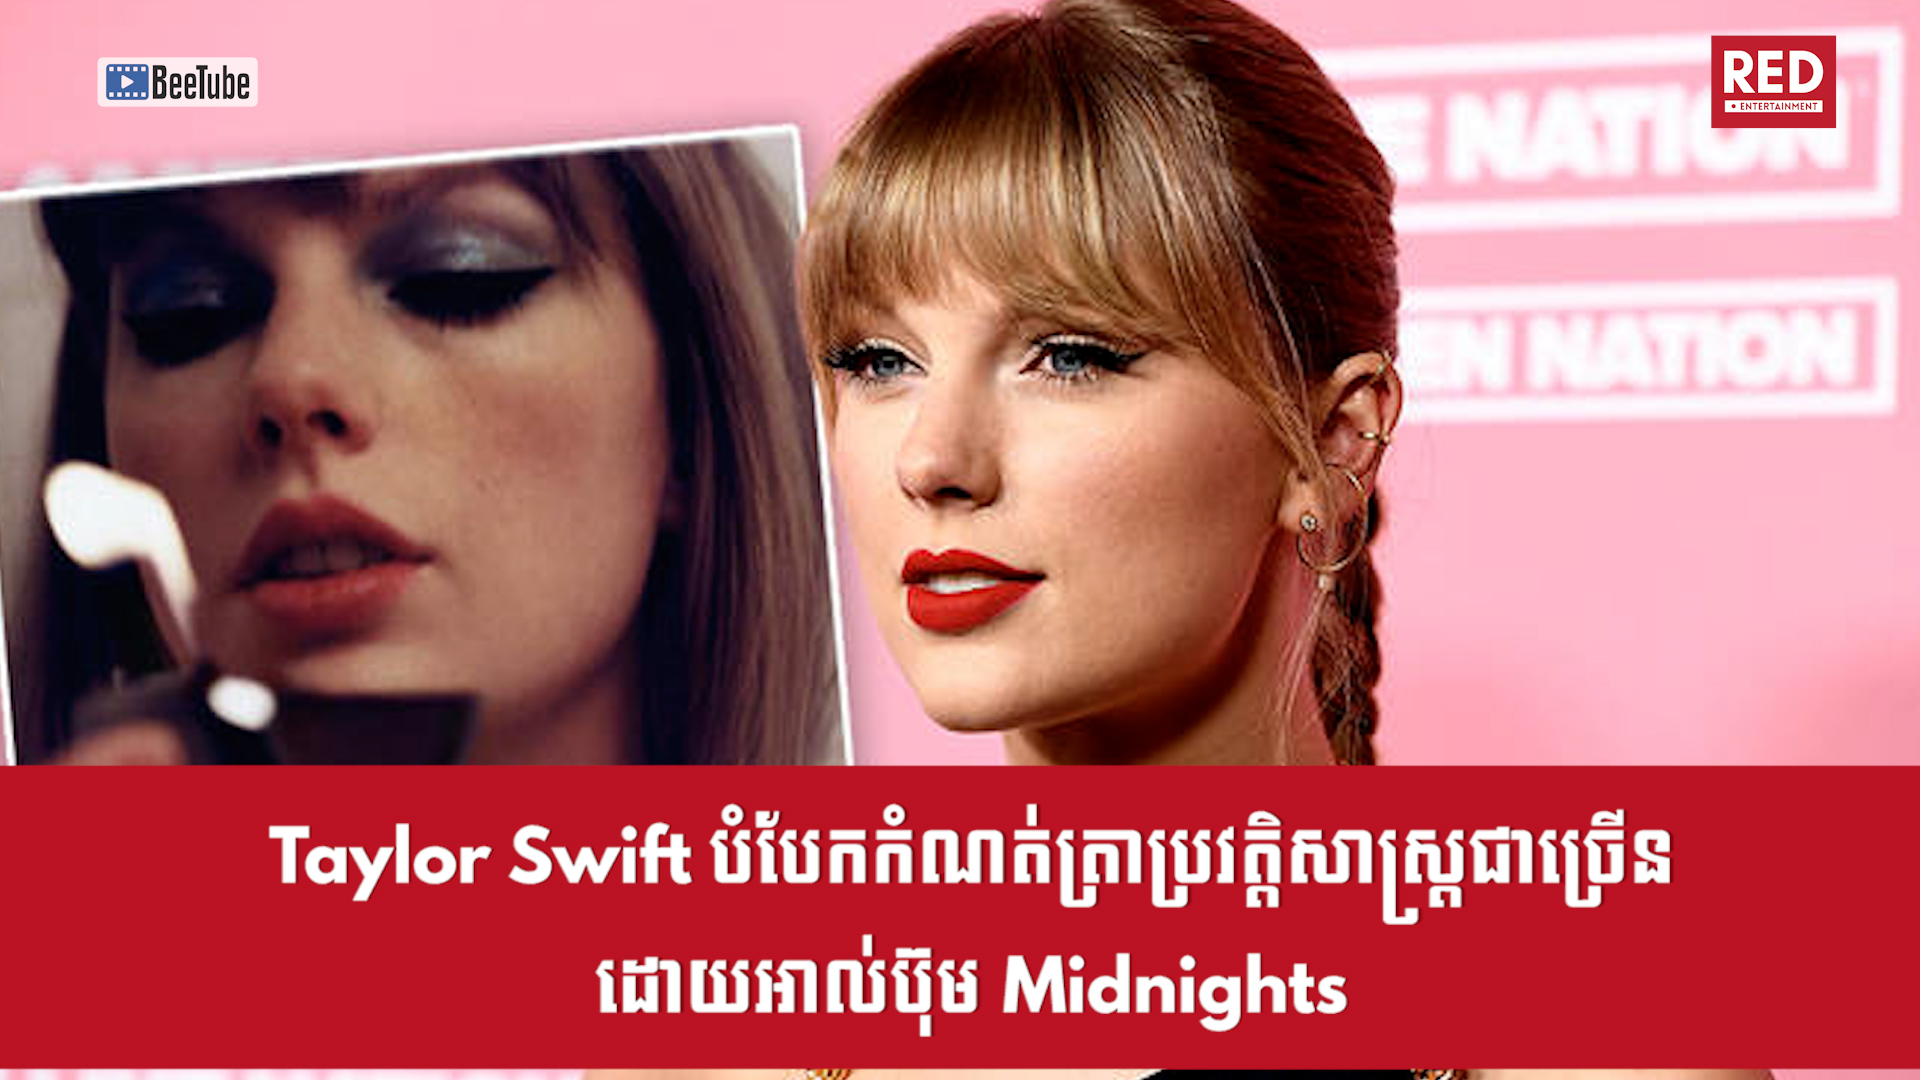 Taylor Swift បំបែកកំណត់ត្រាប្រវត្តិសាស្ត្រជាច្រើនដោយអាល់ប៊ុម Midnights